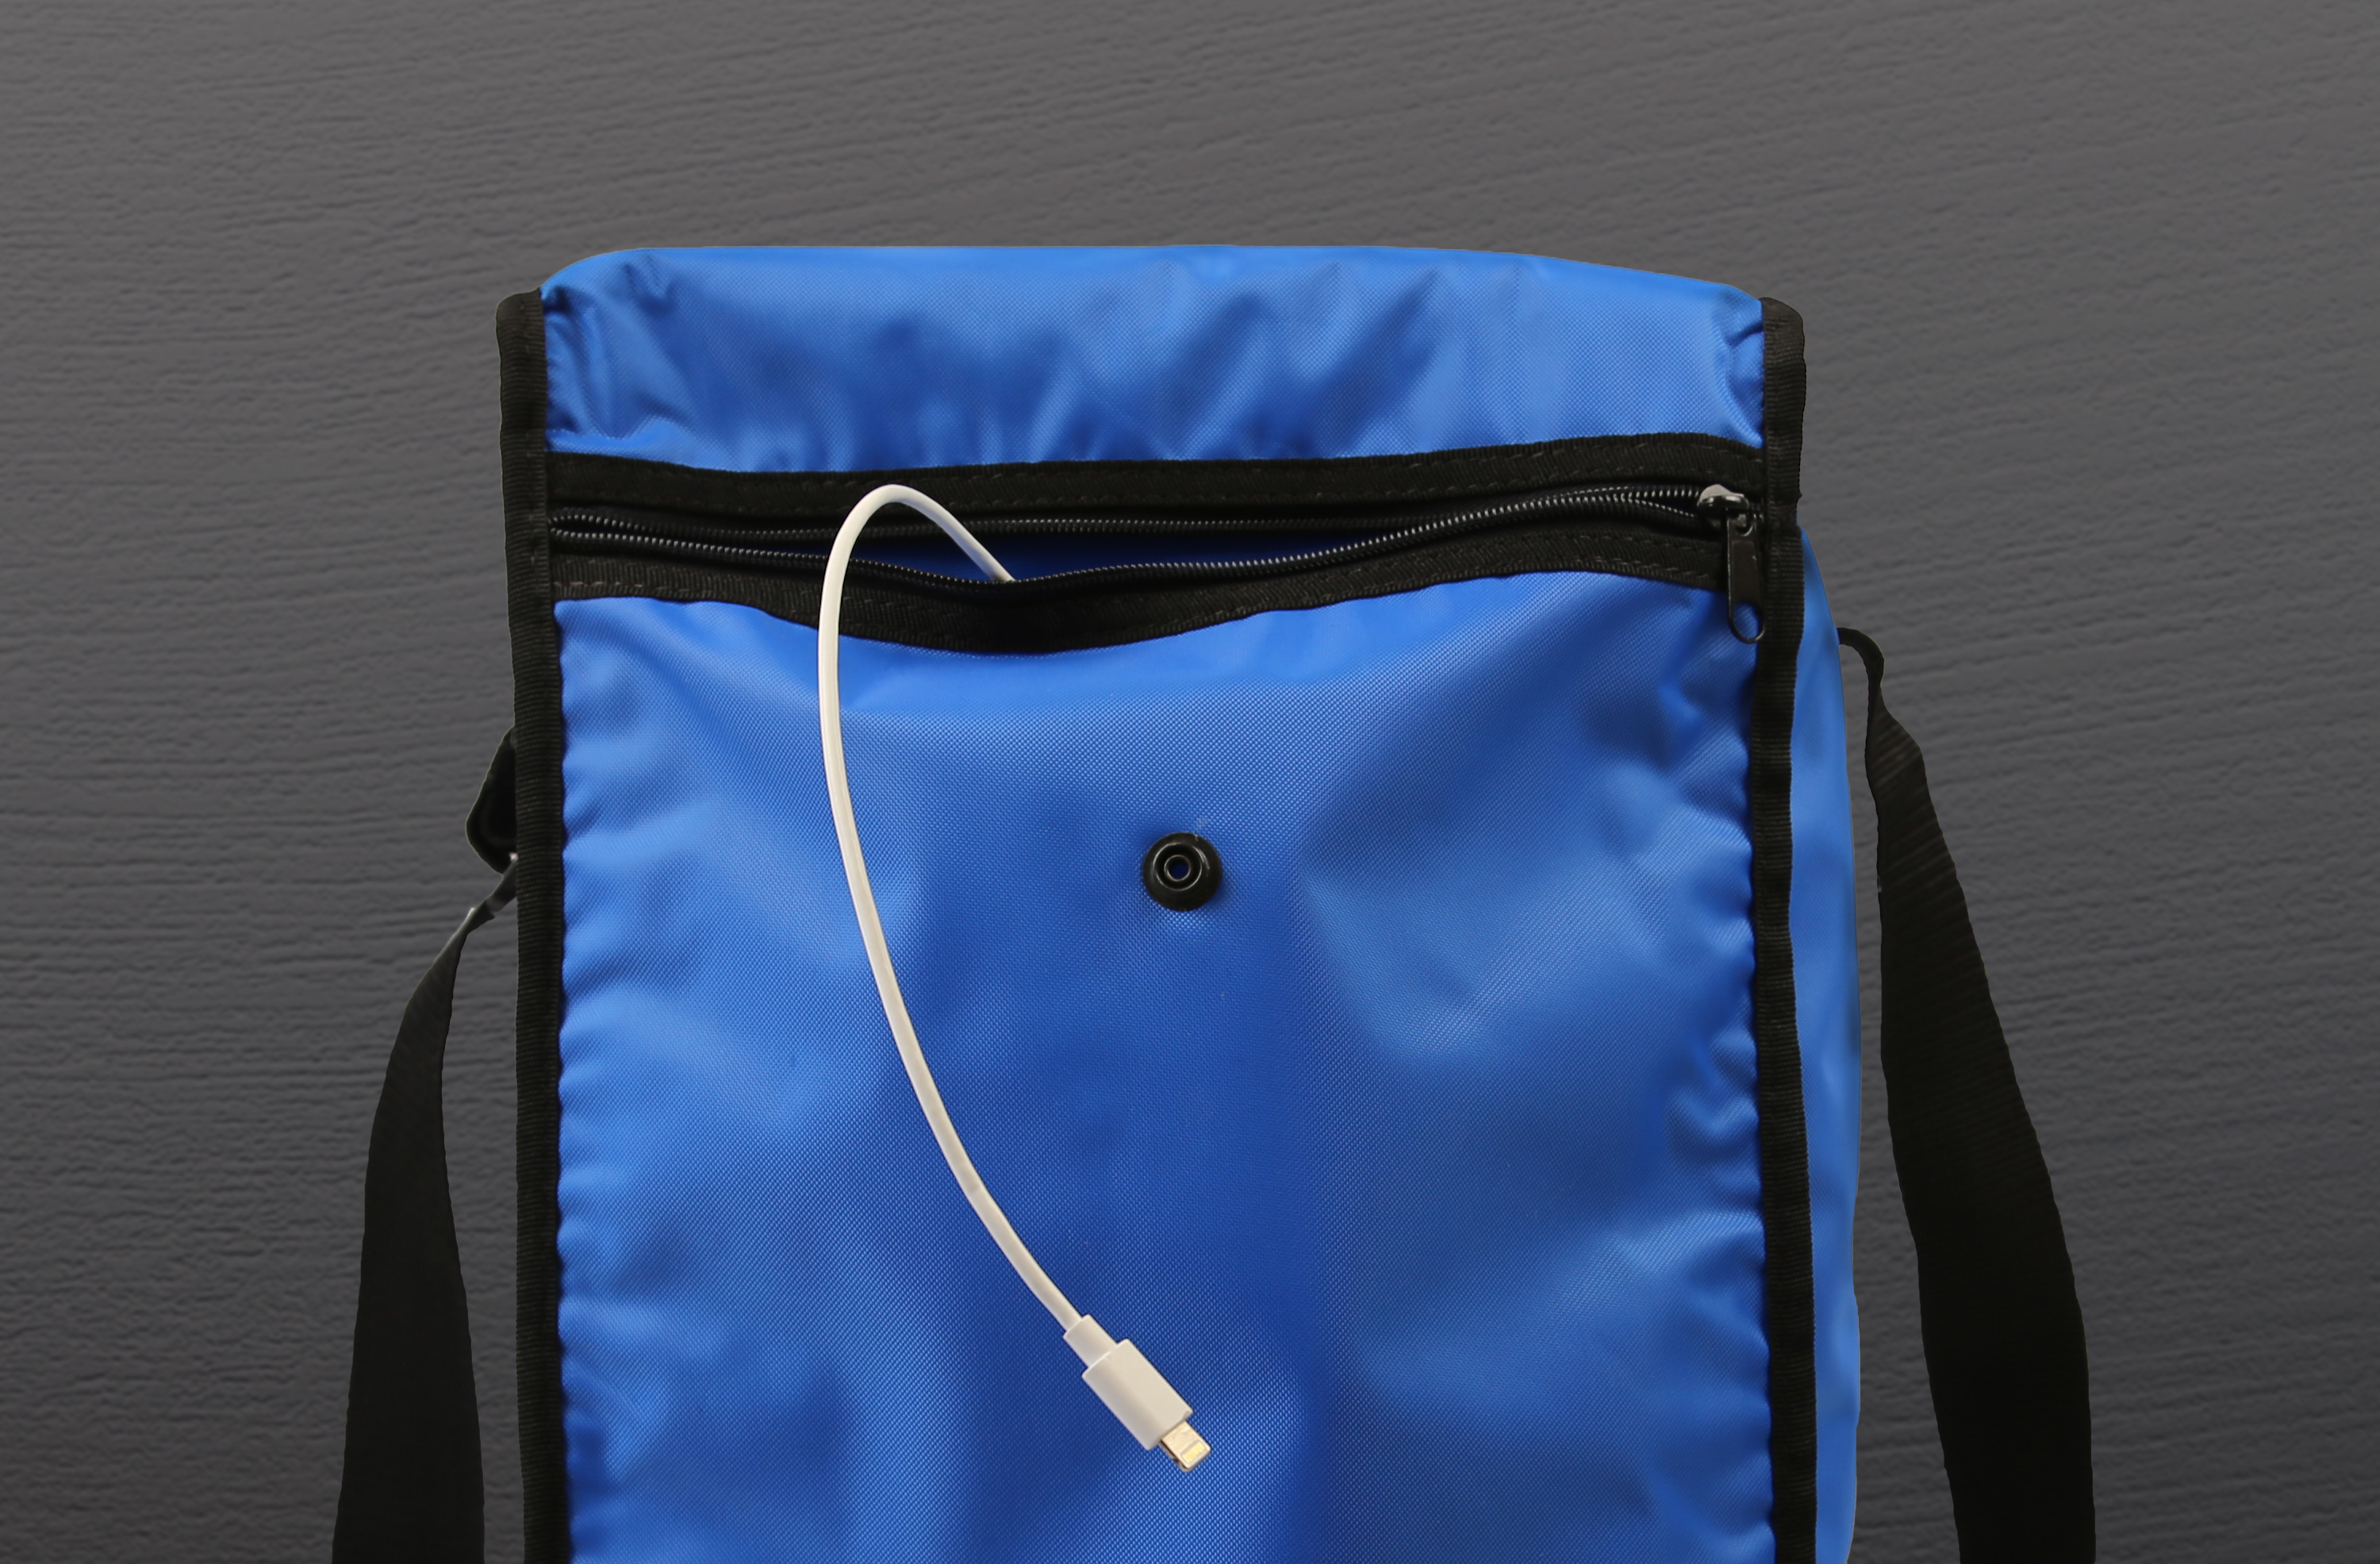 LEBA 5 für PVC, Apple, Aufbewahrungstasche Notebook-Tasche Samsung, Universal Umhängetasche Microsoft, Tablet Blau